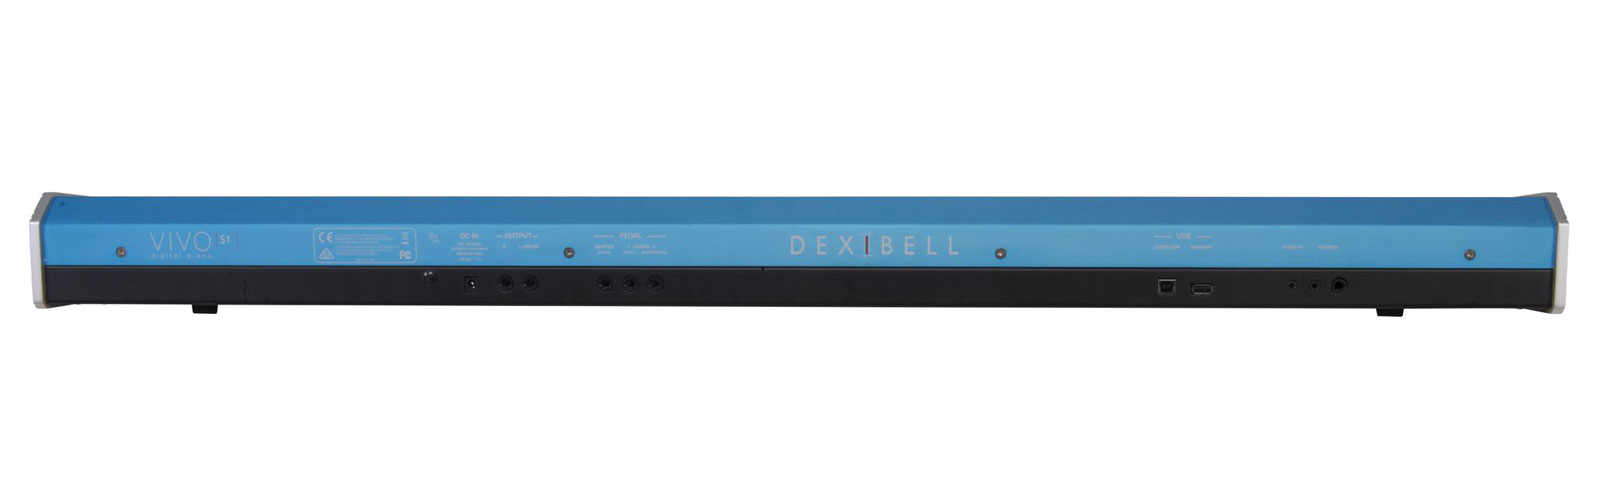 Dexibell Vivos1 - Noir - Piano digital portatil - Variation 2